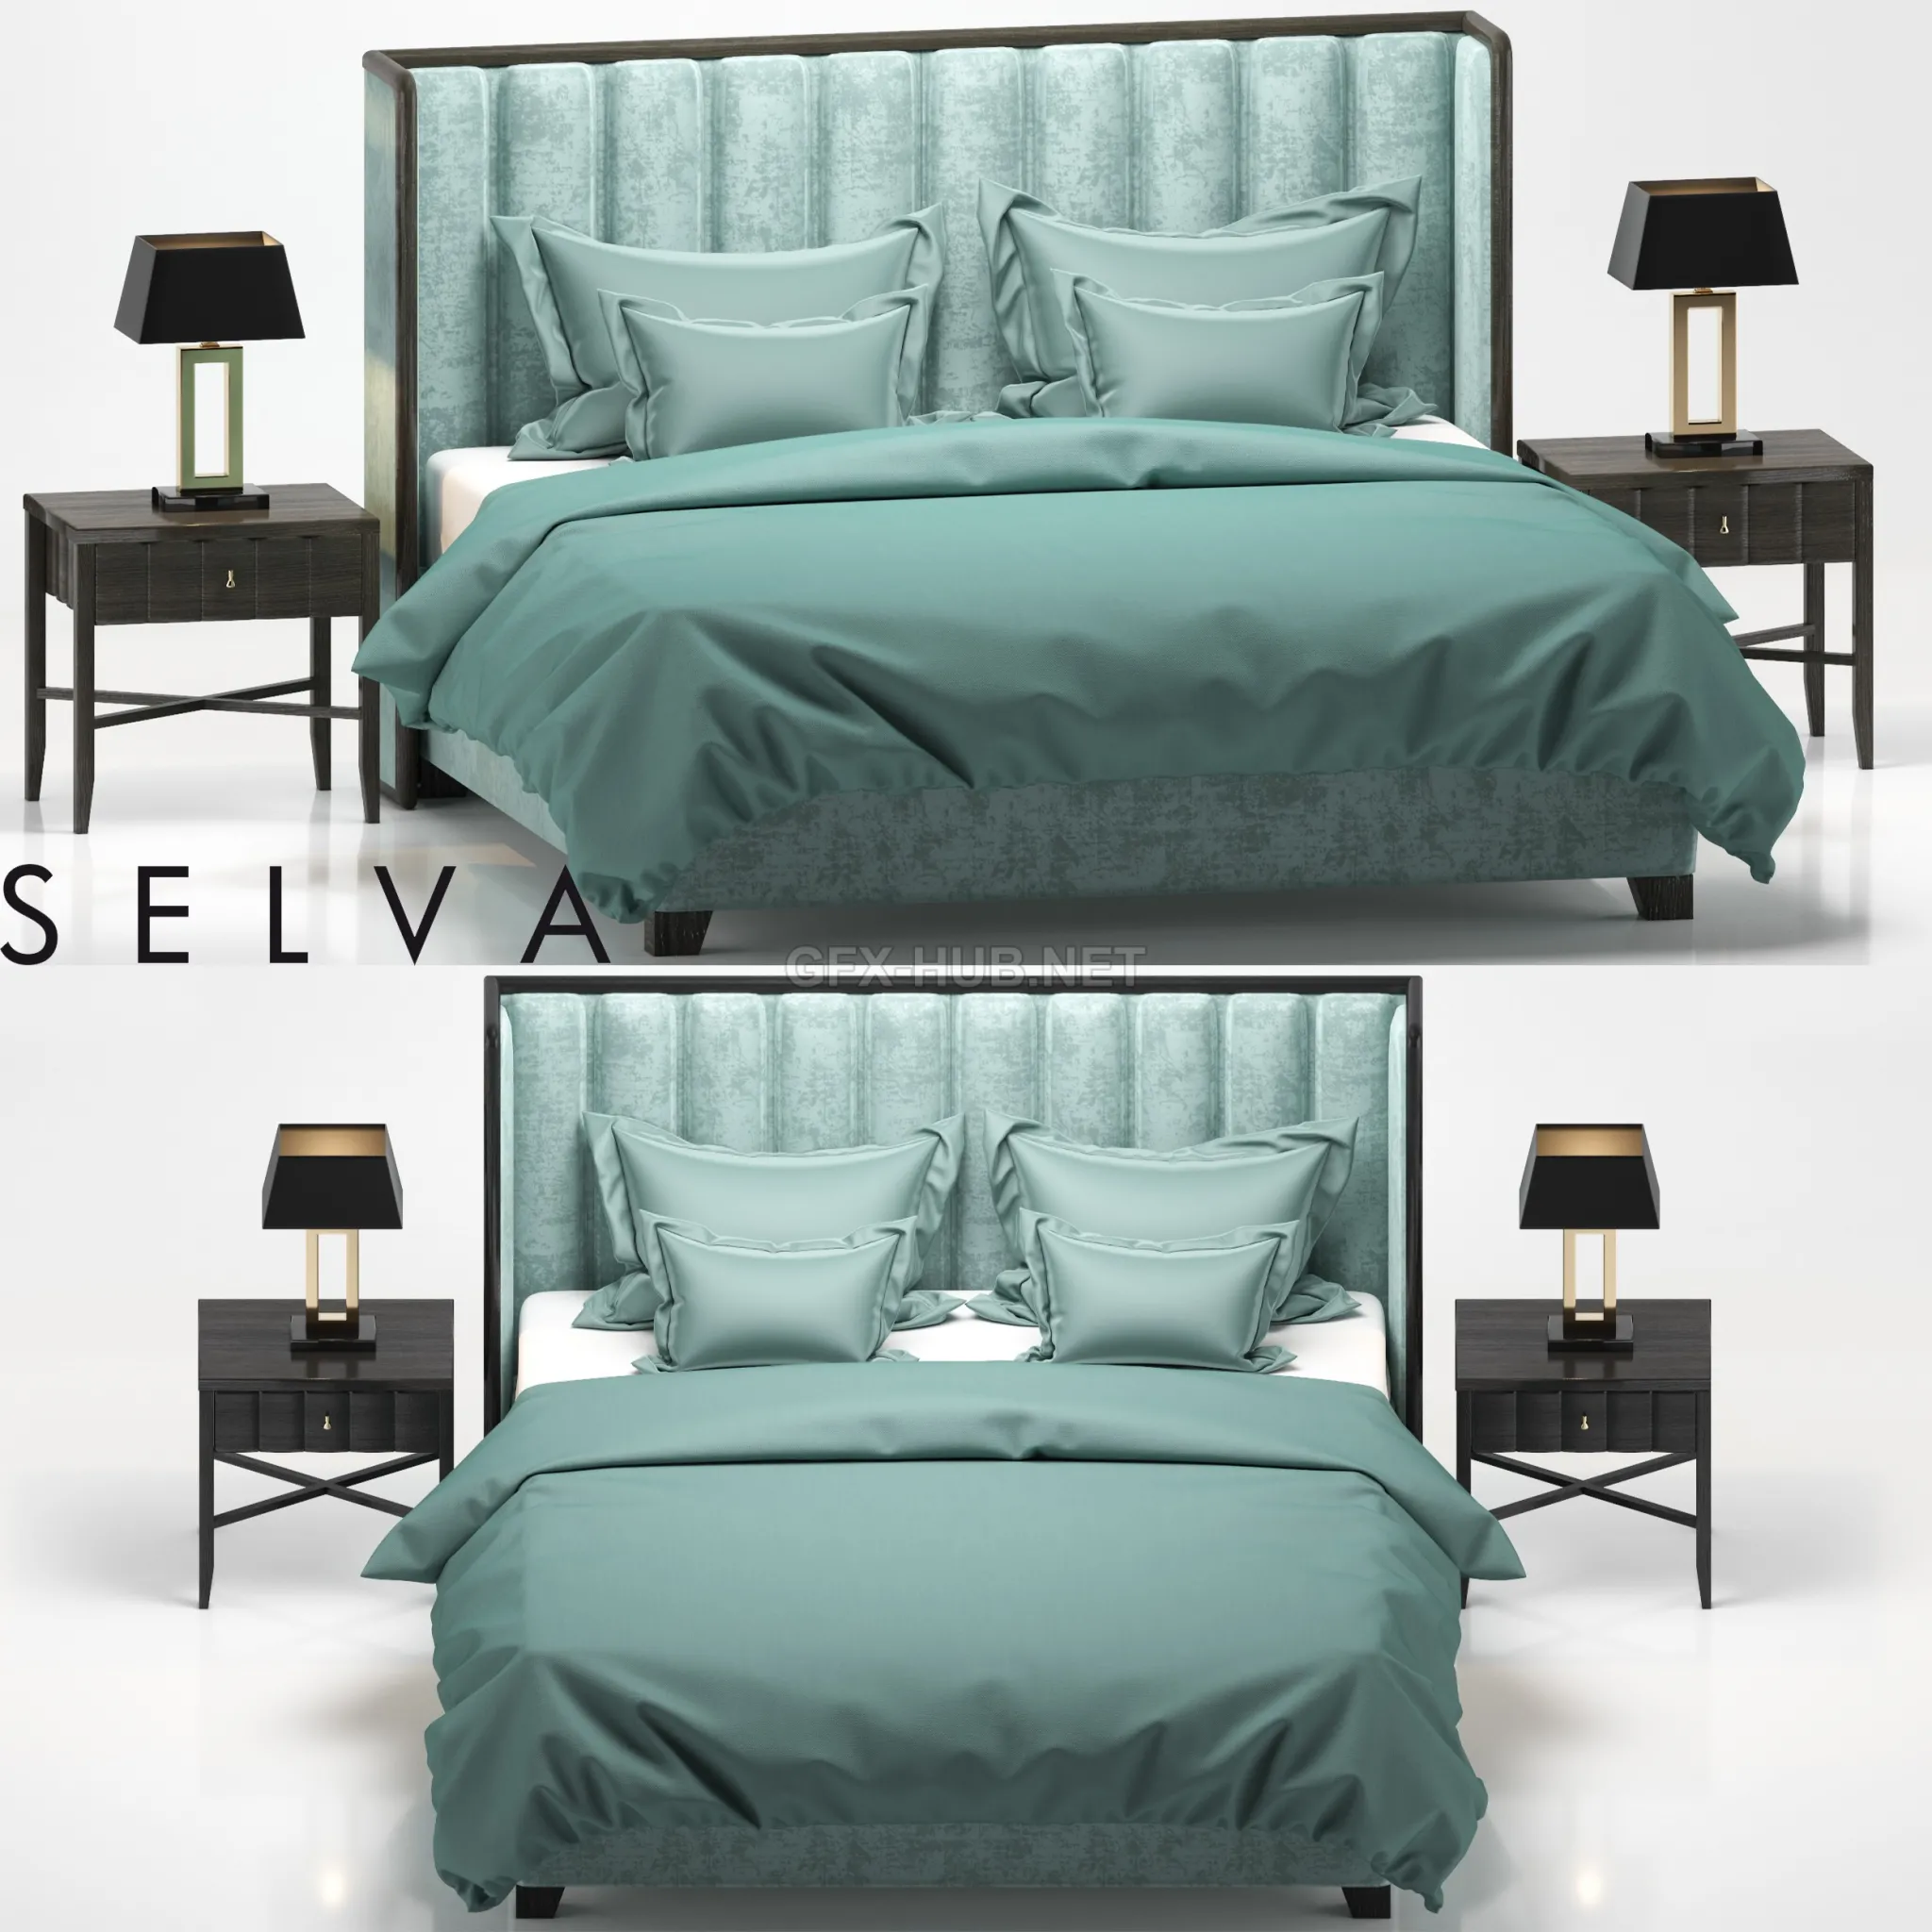 Bed with Headboard TRUST Selva Philipp LETTI E COMODINI 1 – 207833